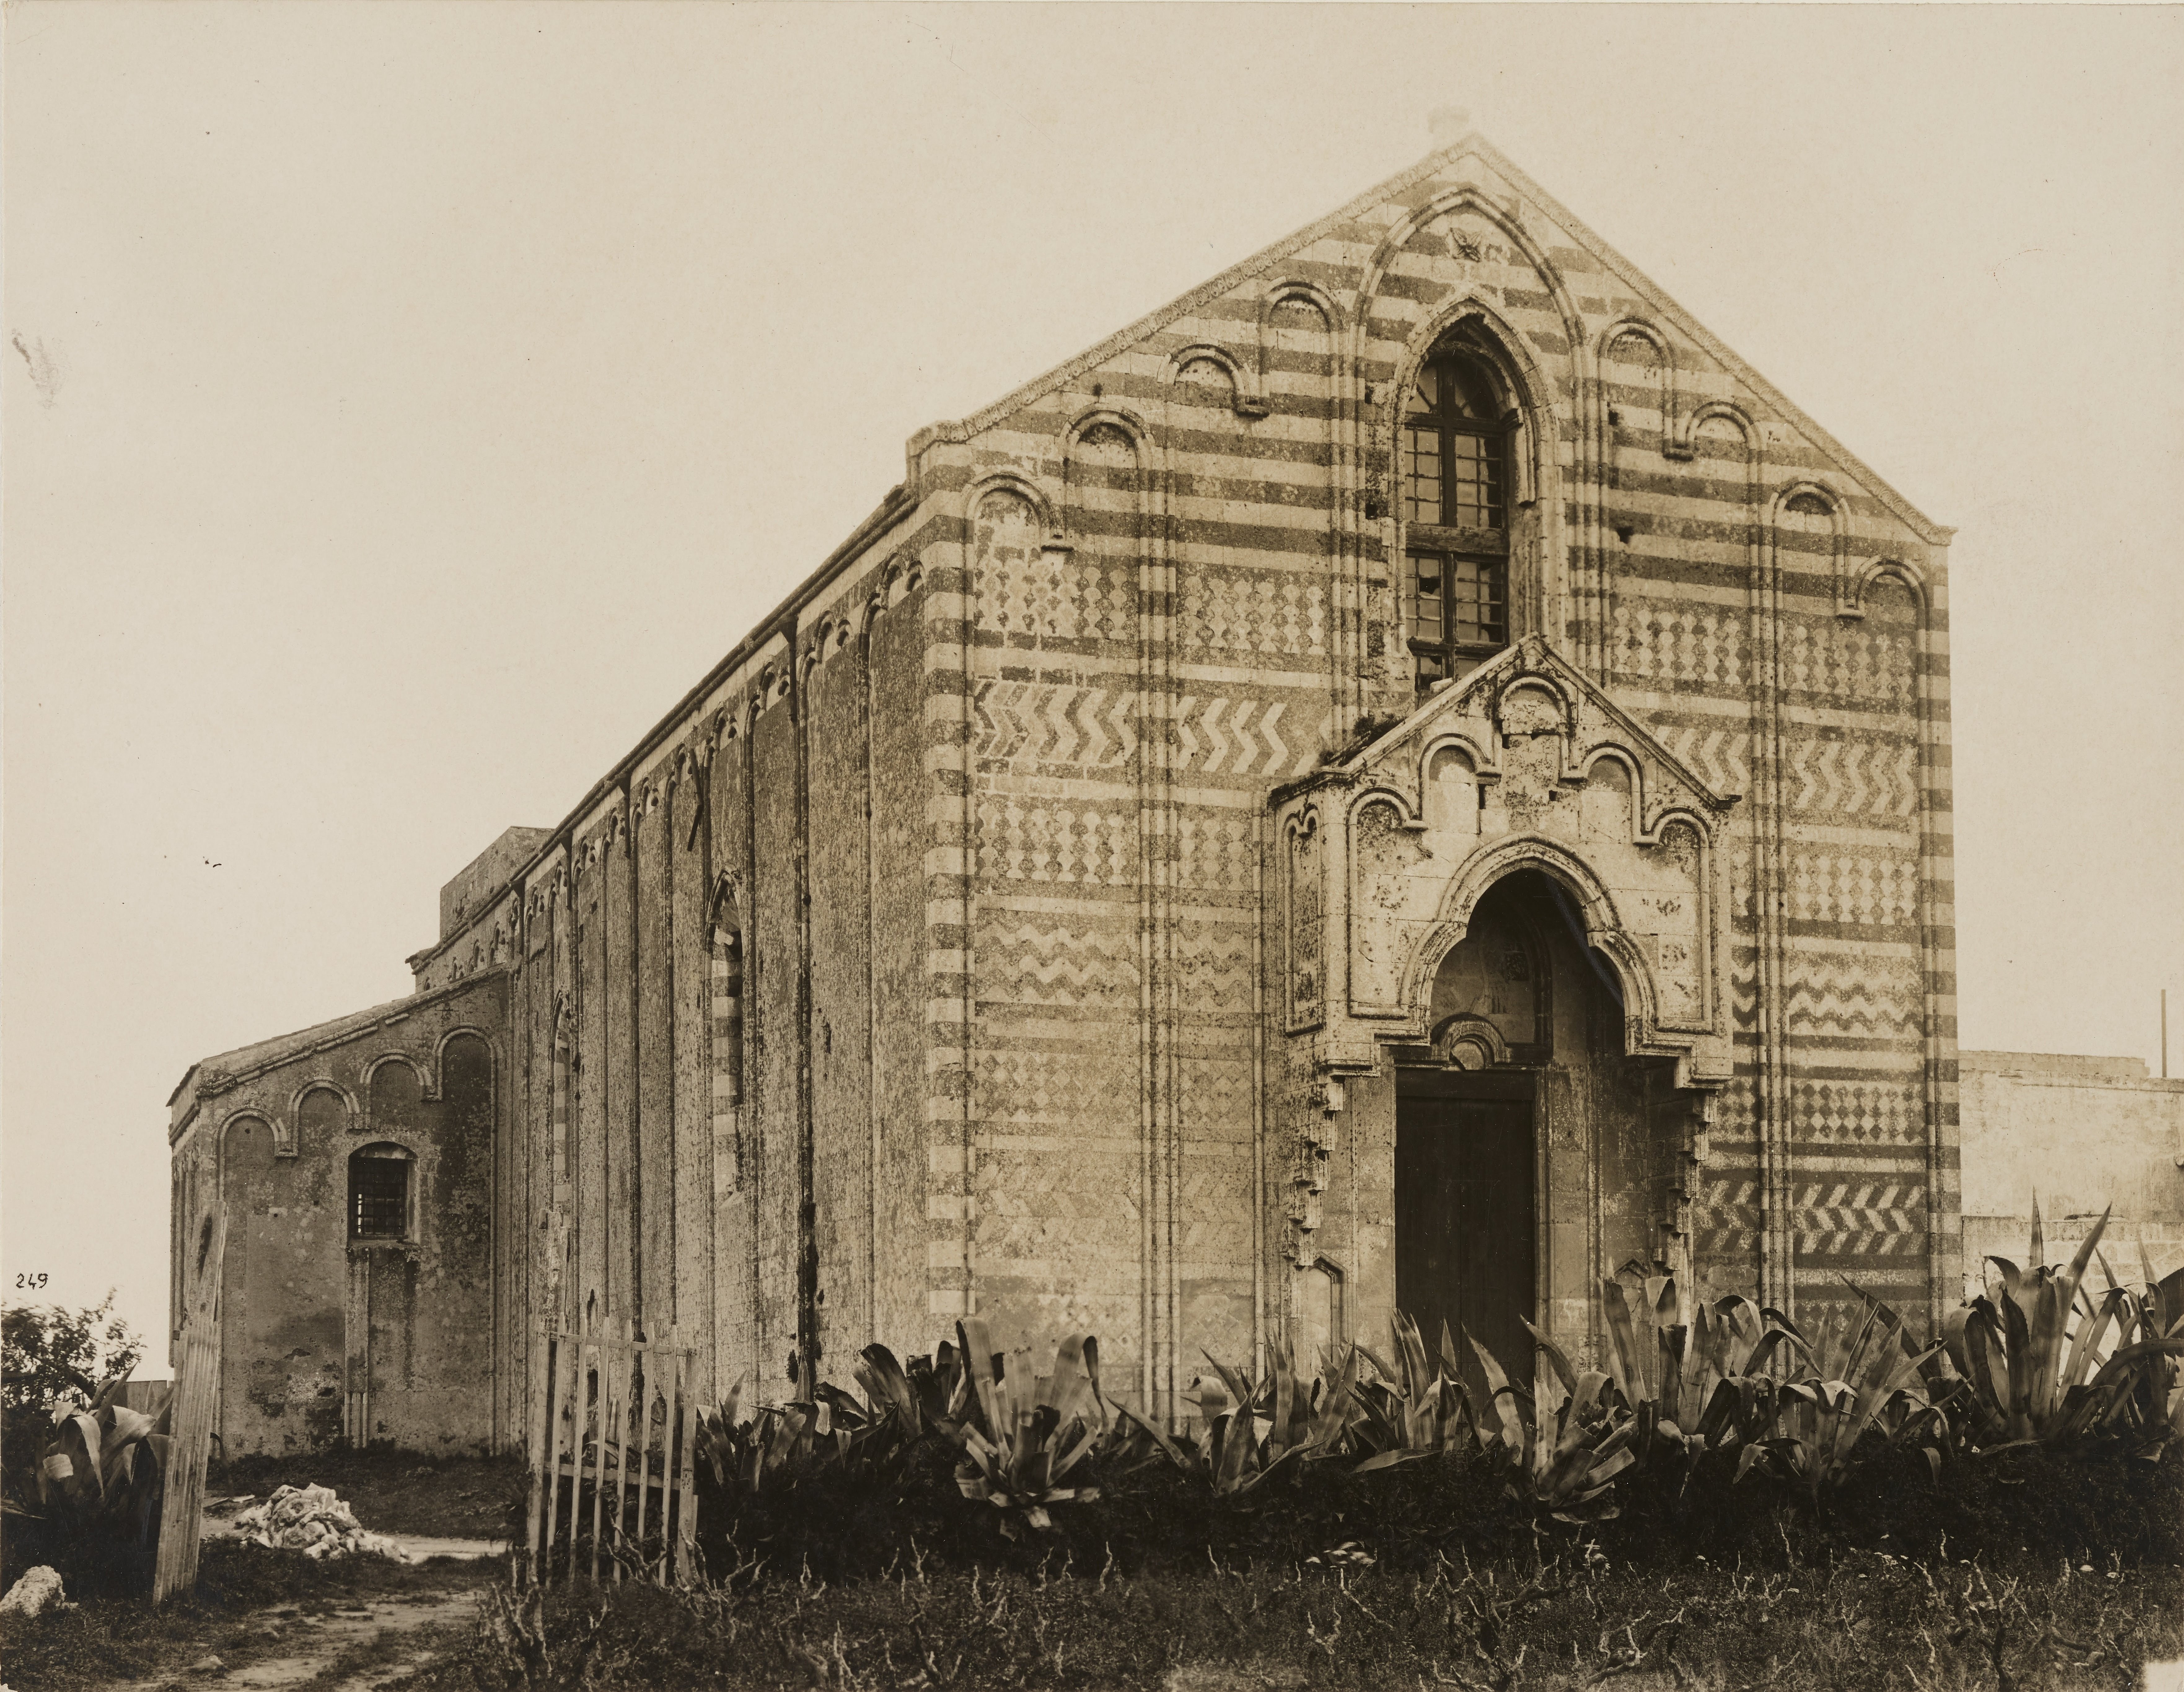 Fotografo non identificato, Brindisi - Chiesa di S. Maria del Casale, facciata, 1901-1925, gelatina ai sali d'argento, MPI141593